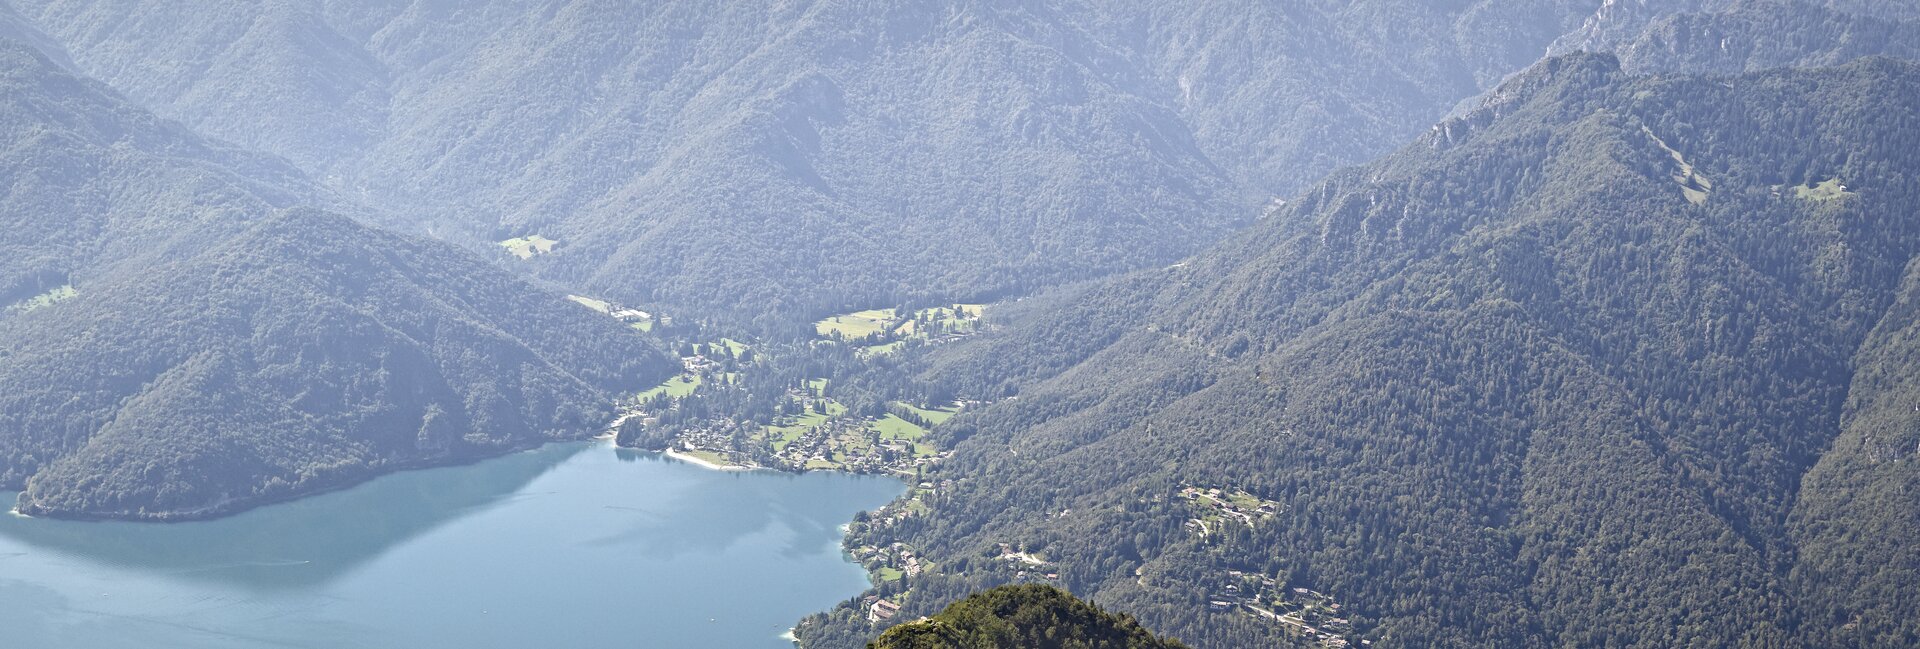 Valle di Ledro - De ideale plaats voor een vakantie van ontspanning en sport